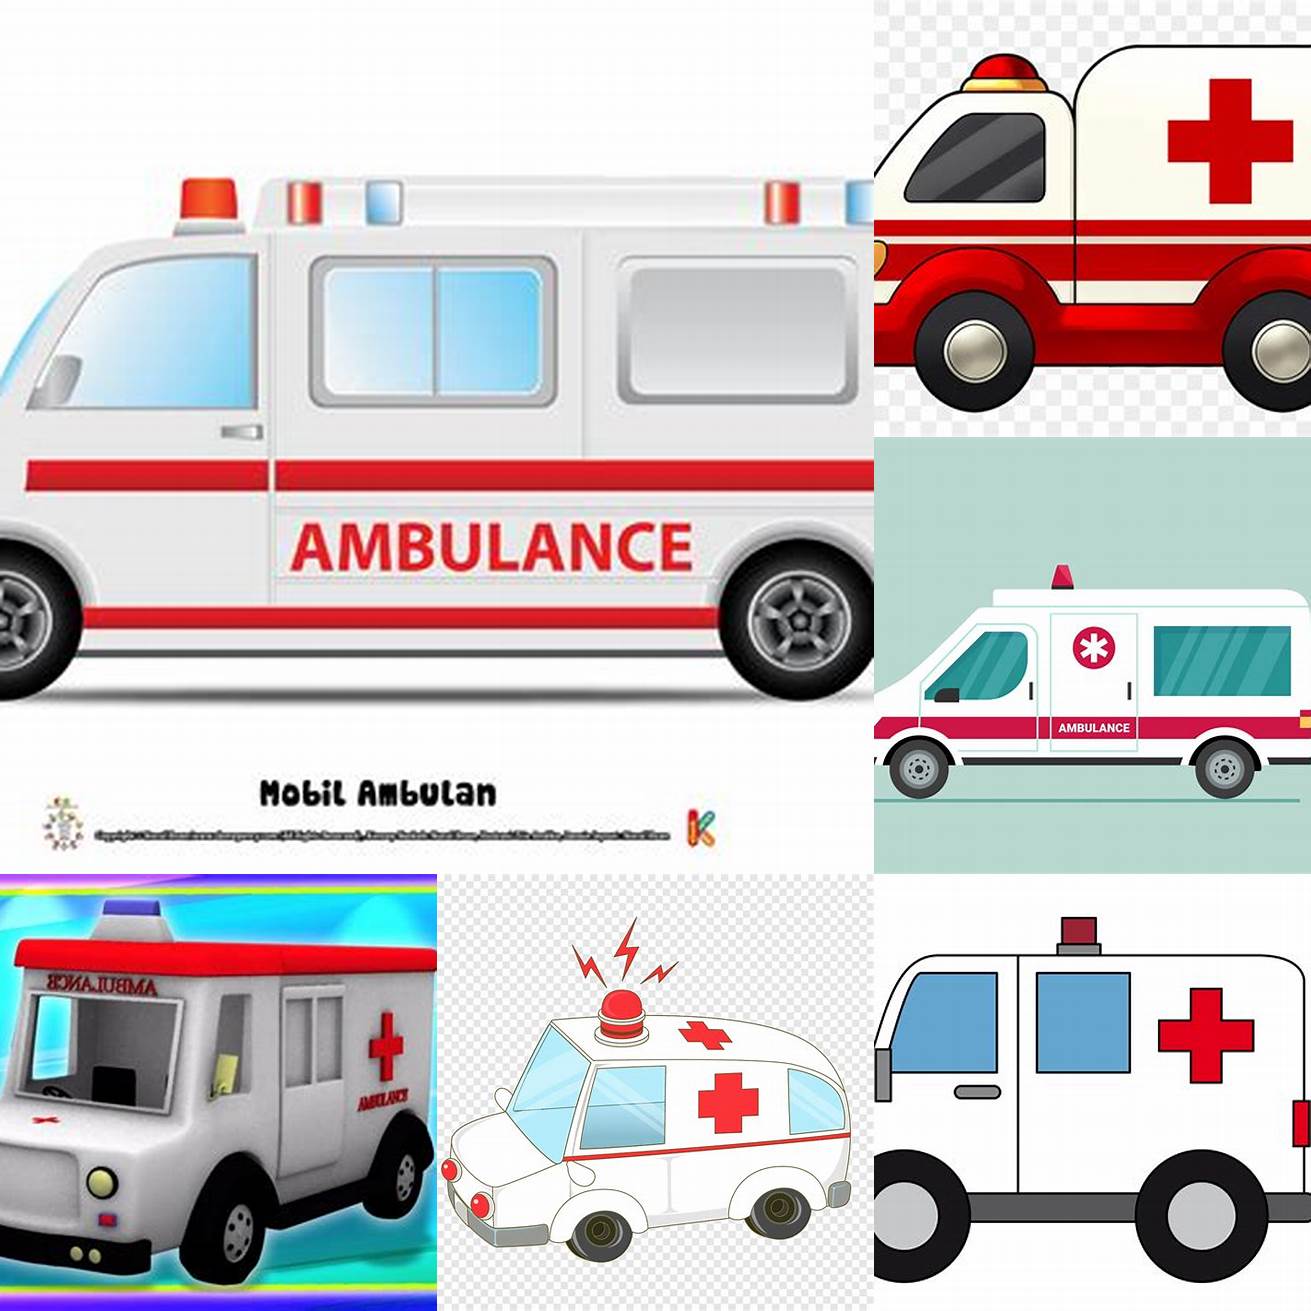 Mobil ambulance kartun dengan warna-warna yang cerah